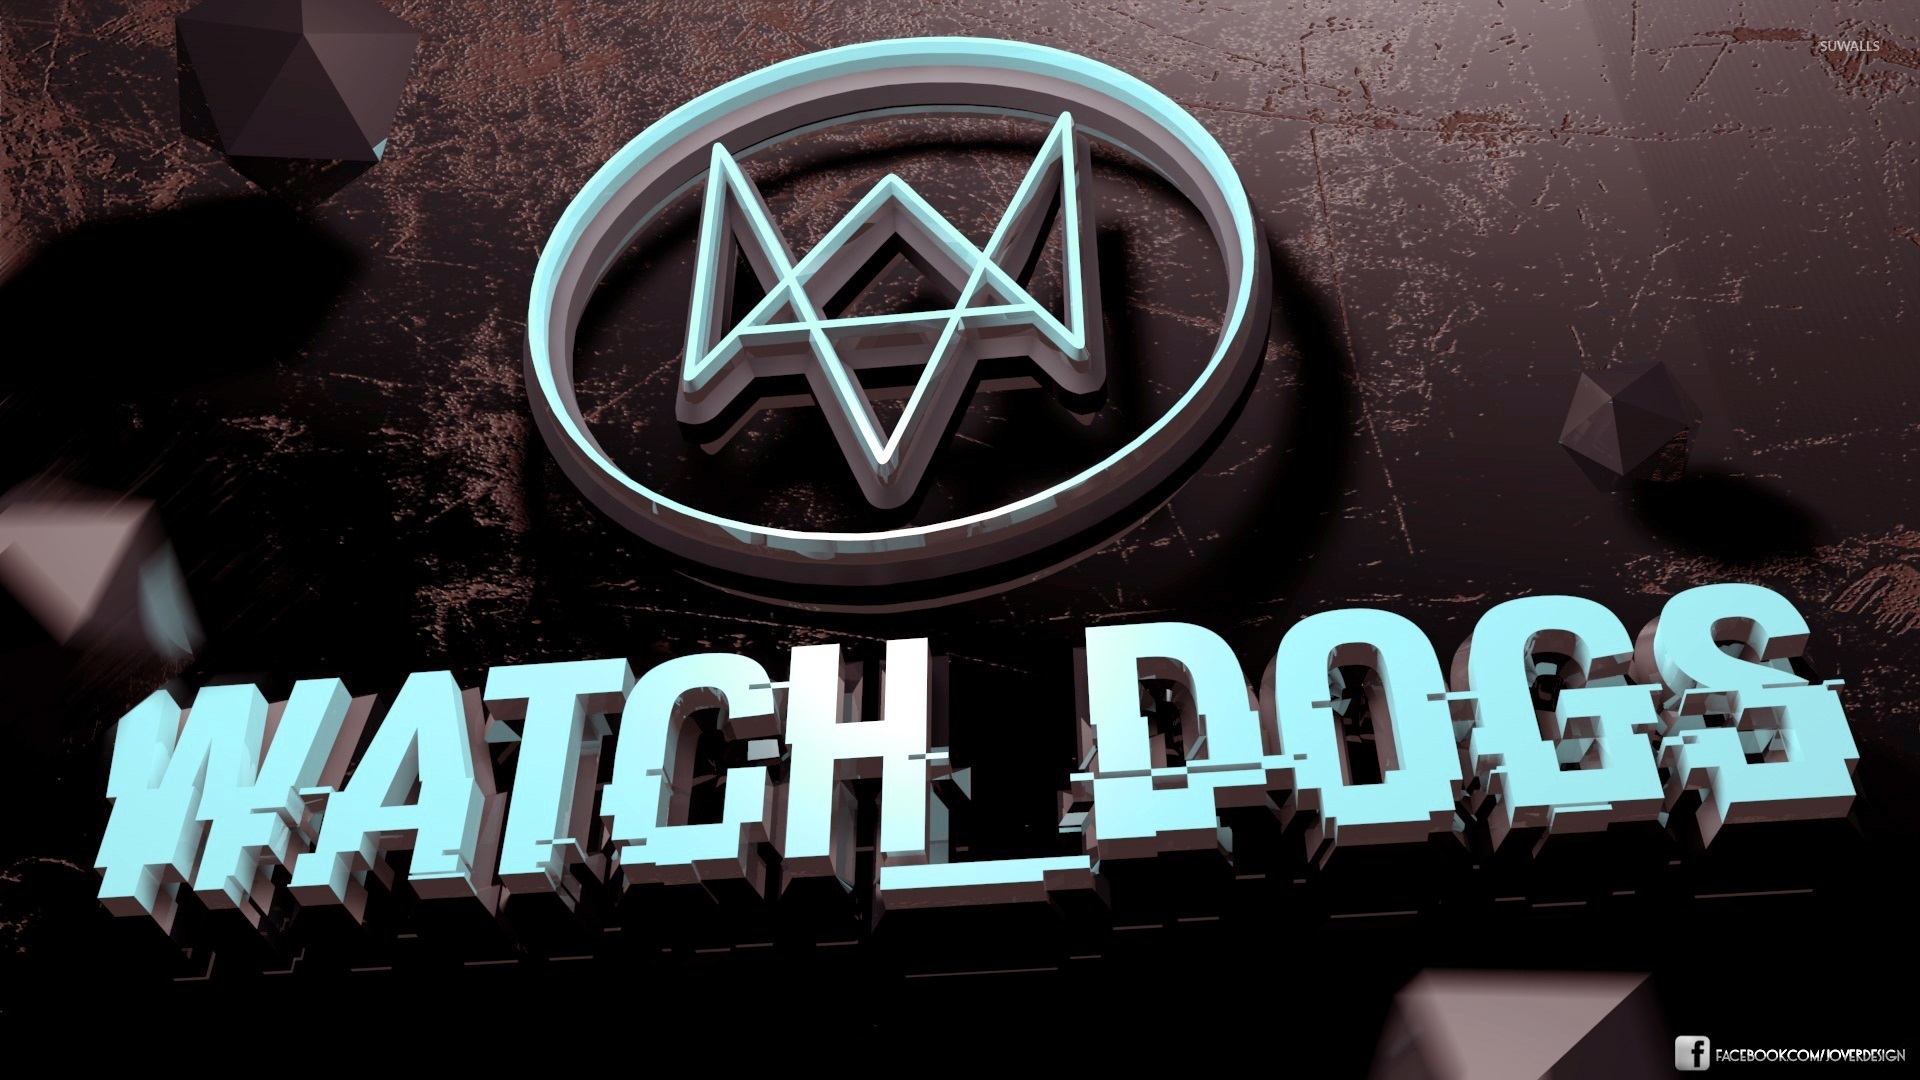 watch dogs logo wallpaper